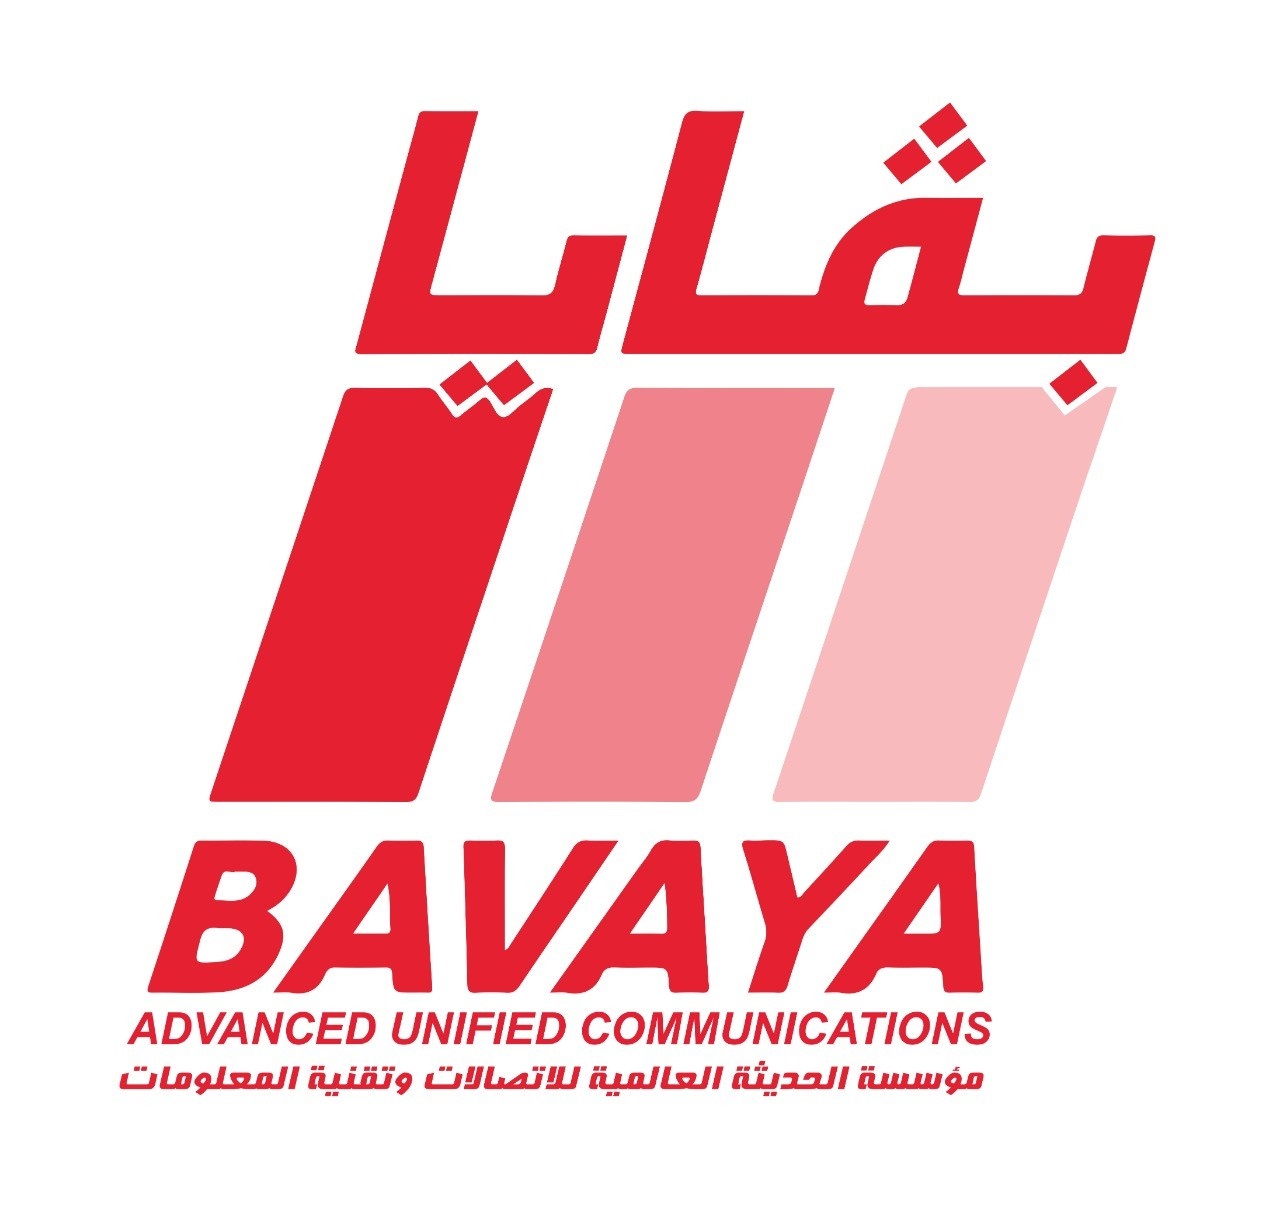 Bavaya